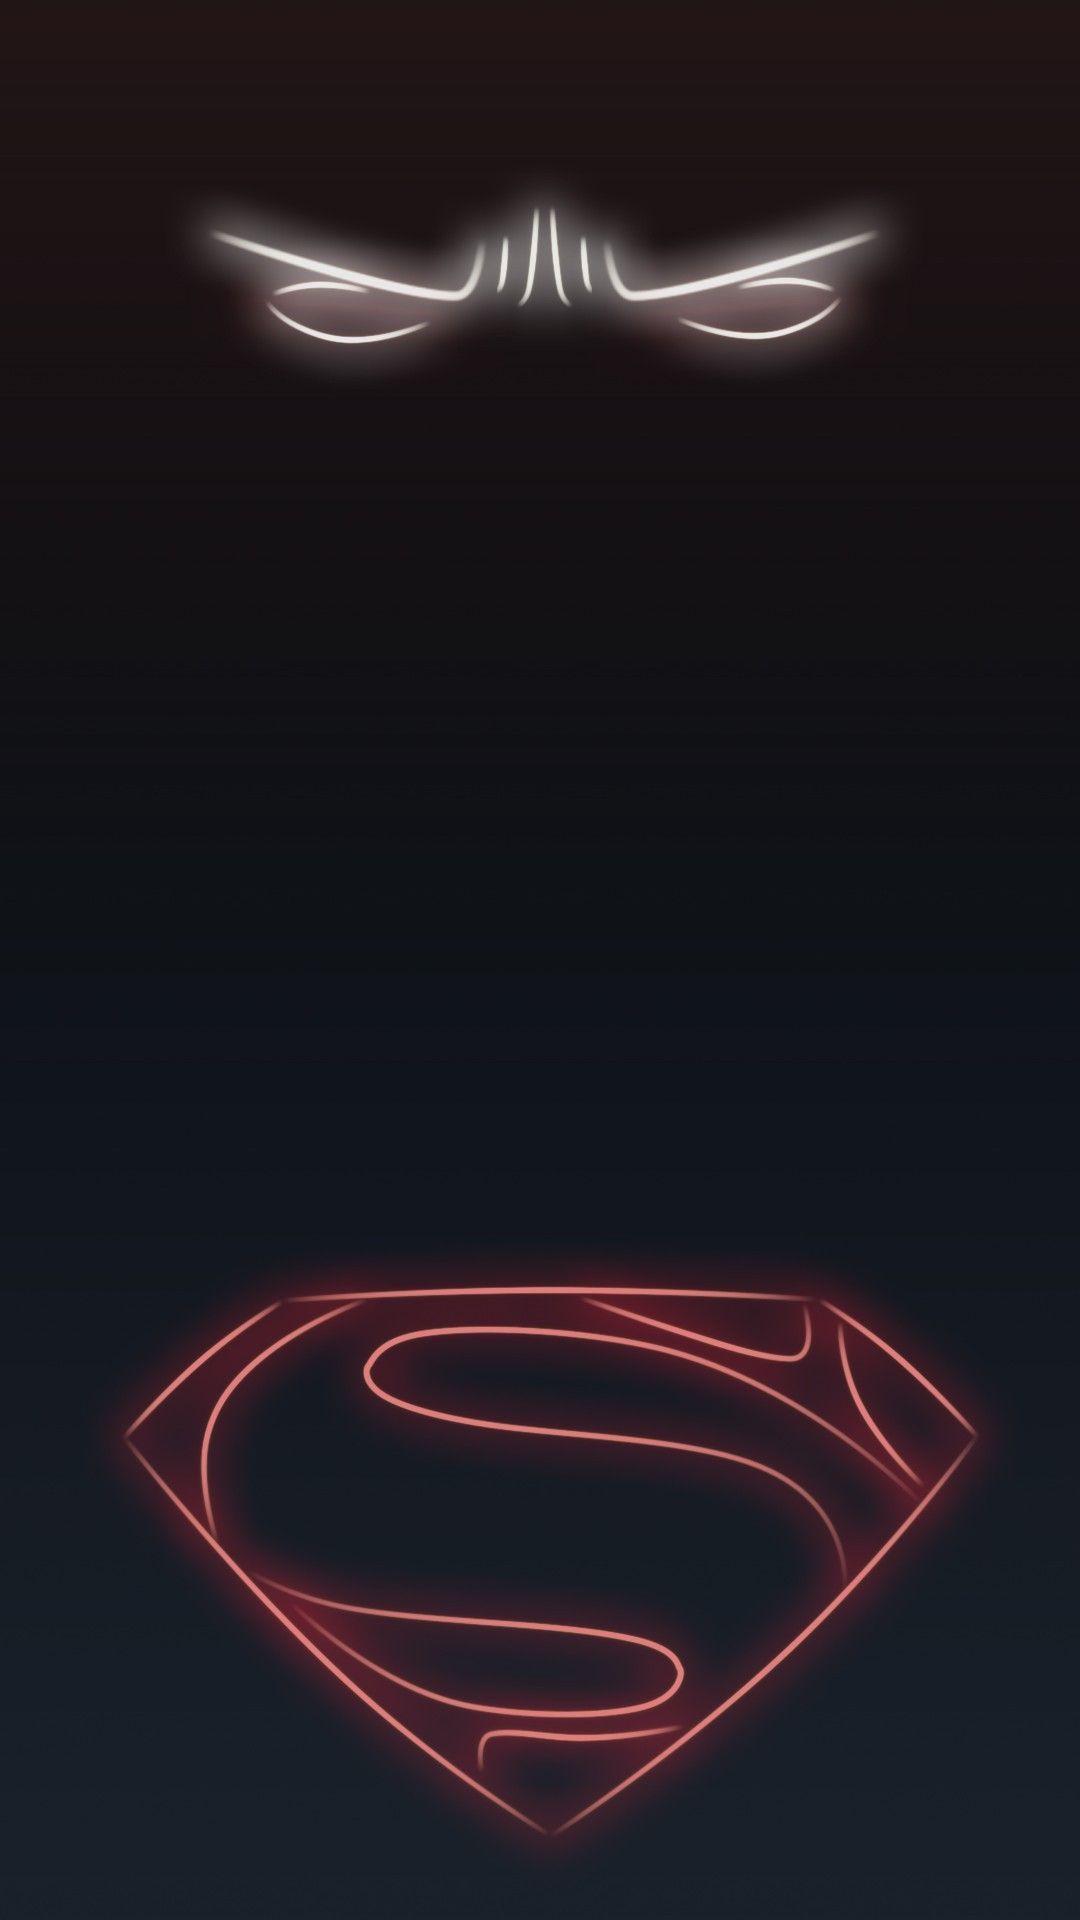 Neon Light Superhero Superman. Superman fondos de pantalla, Flash fondos de pantalla, Fondos de superheroes